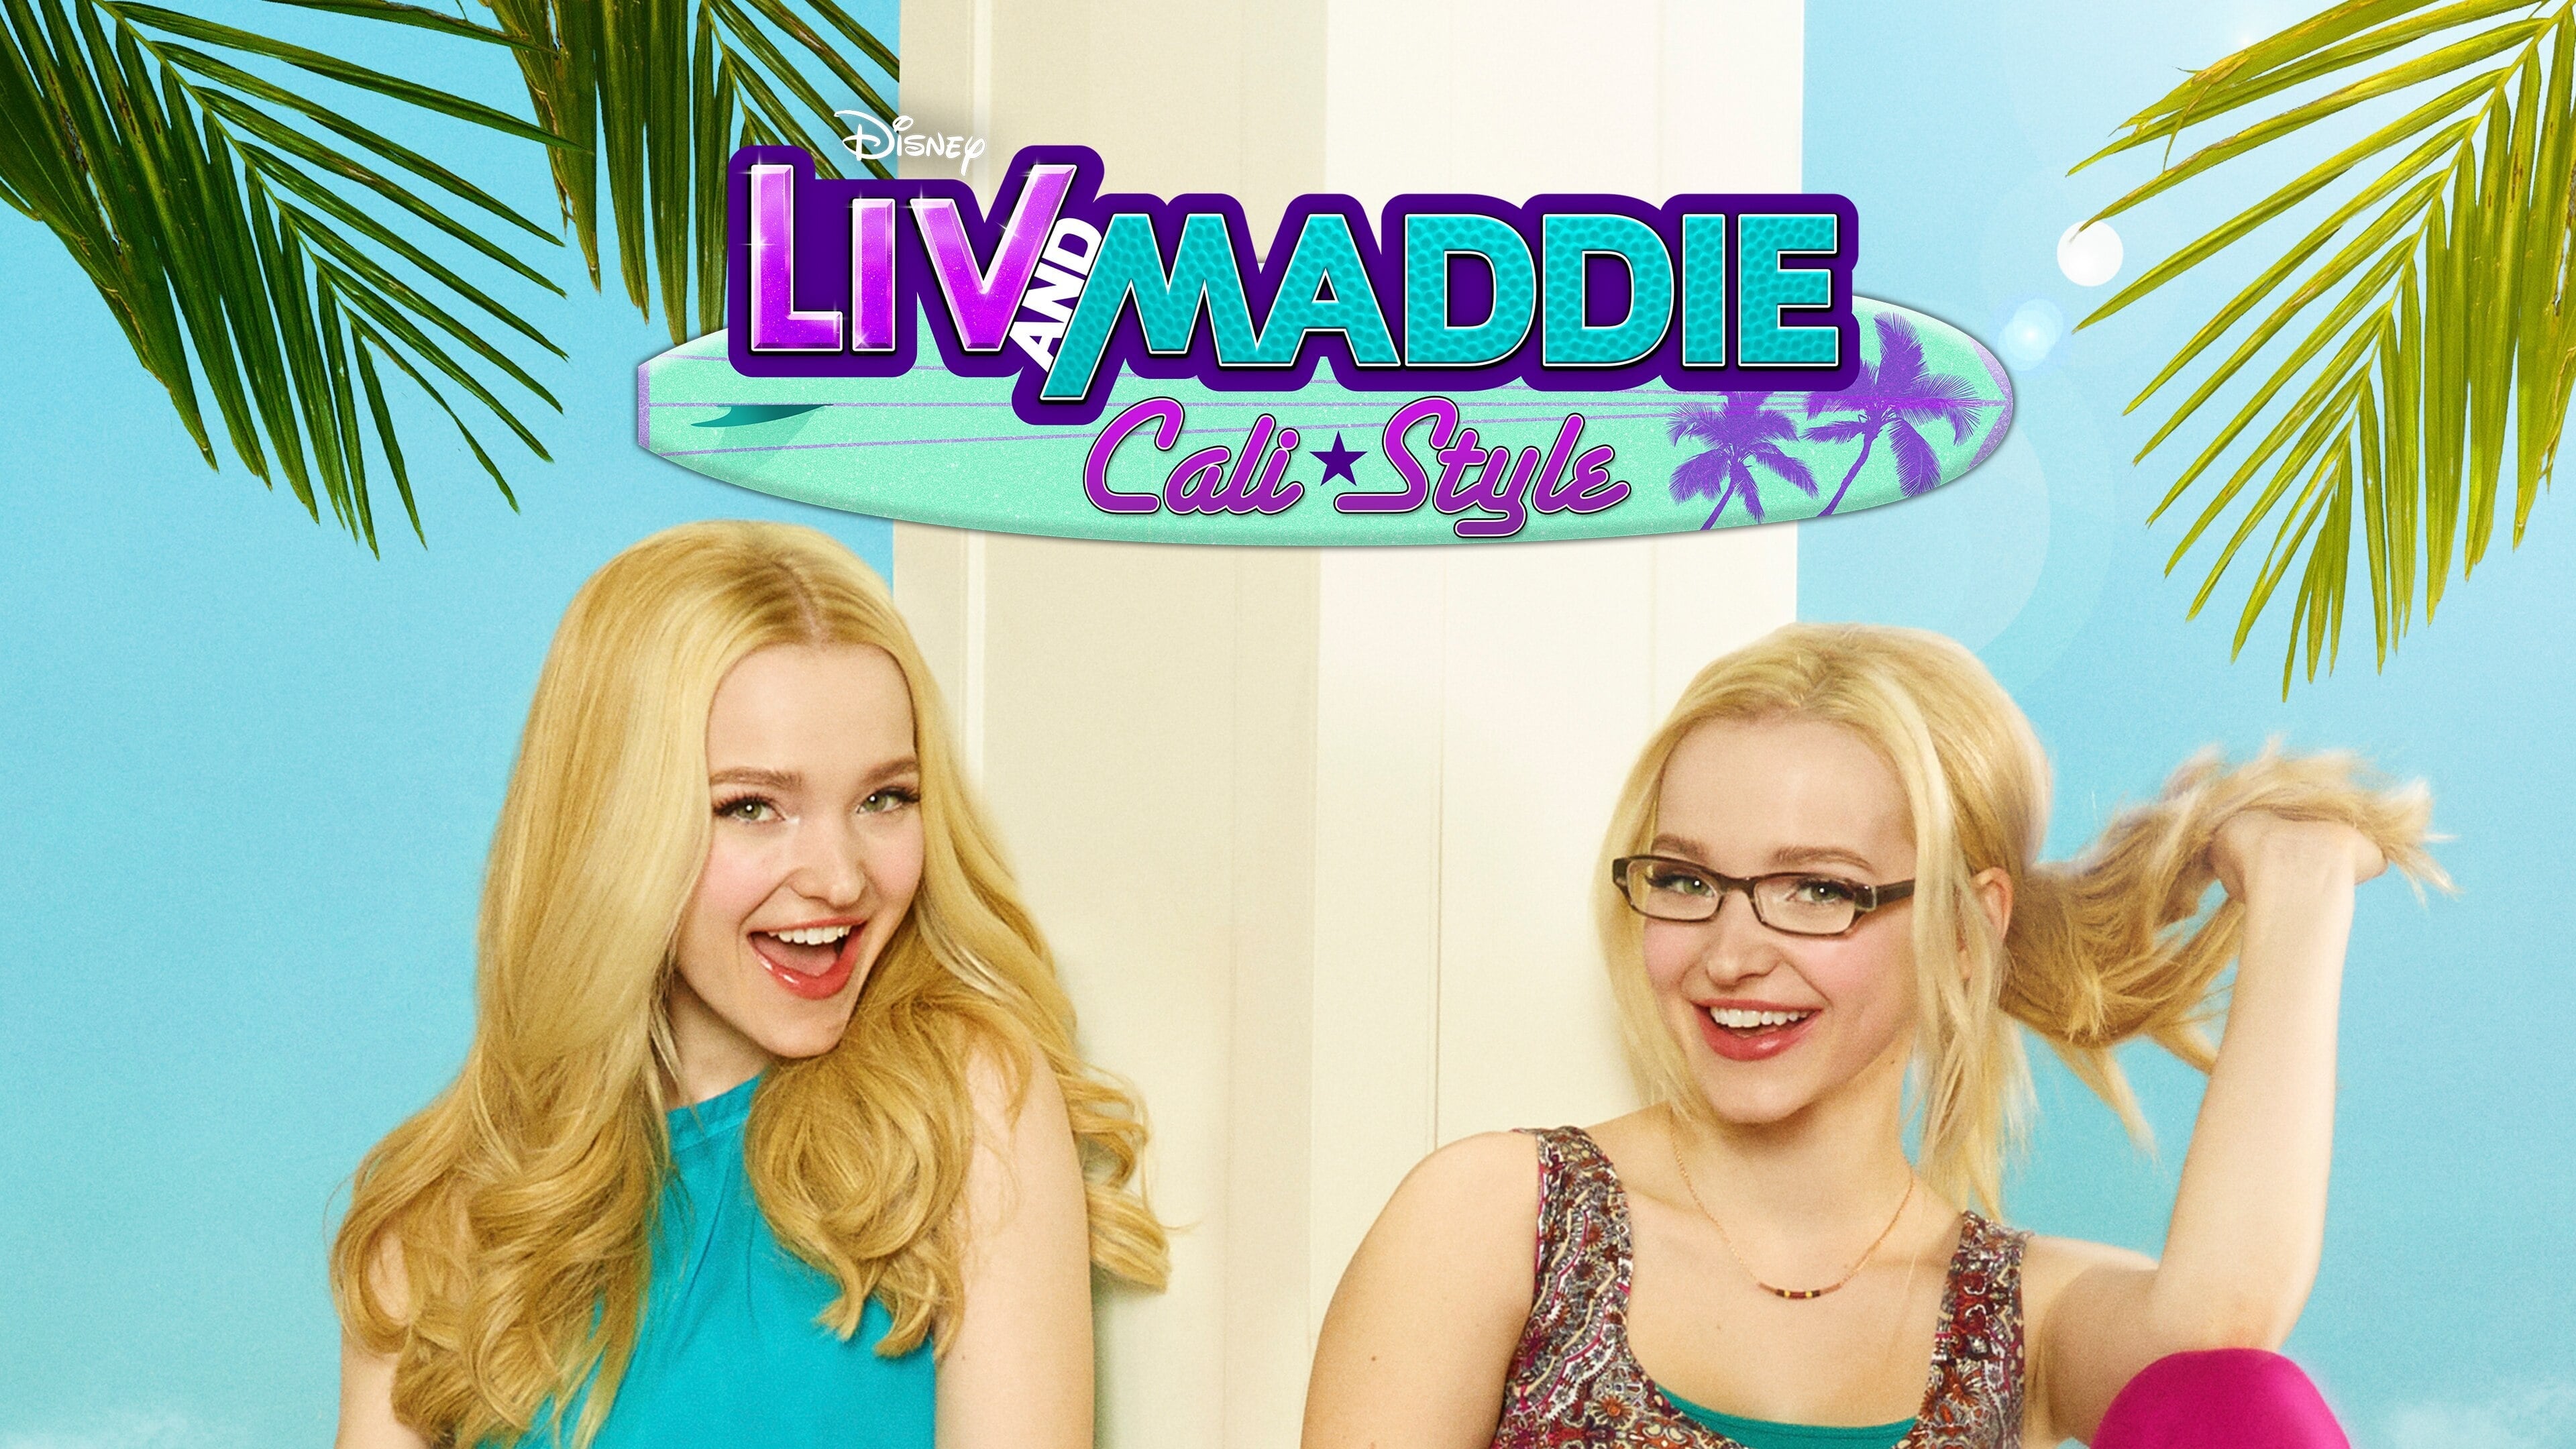 Liv & Maddie